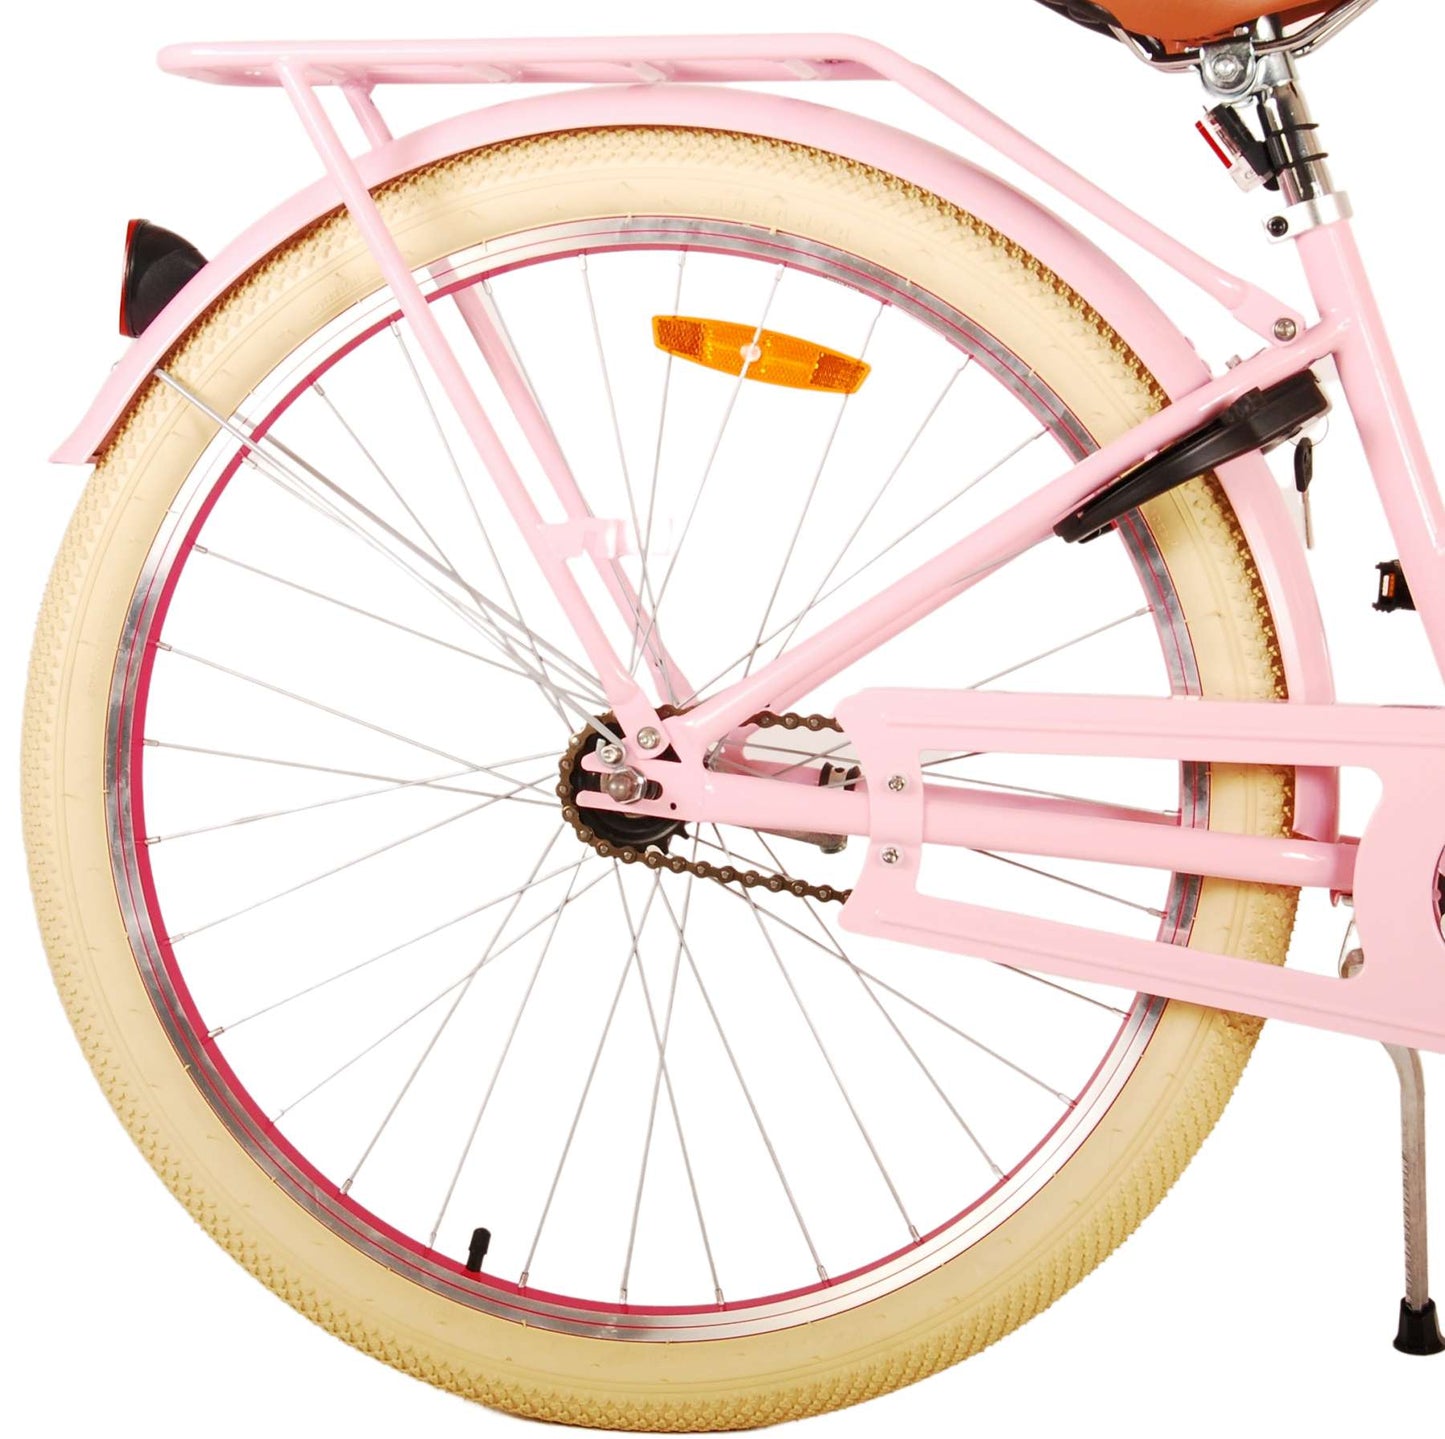 Vlatare eccellente bicicletta per bambini - ragazze - 26 pollici - rosa